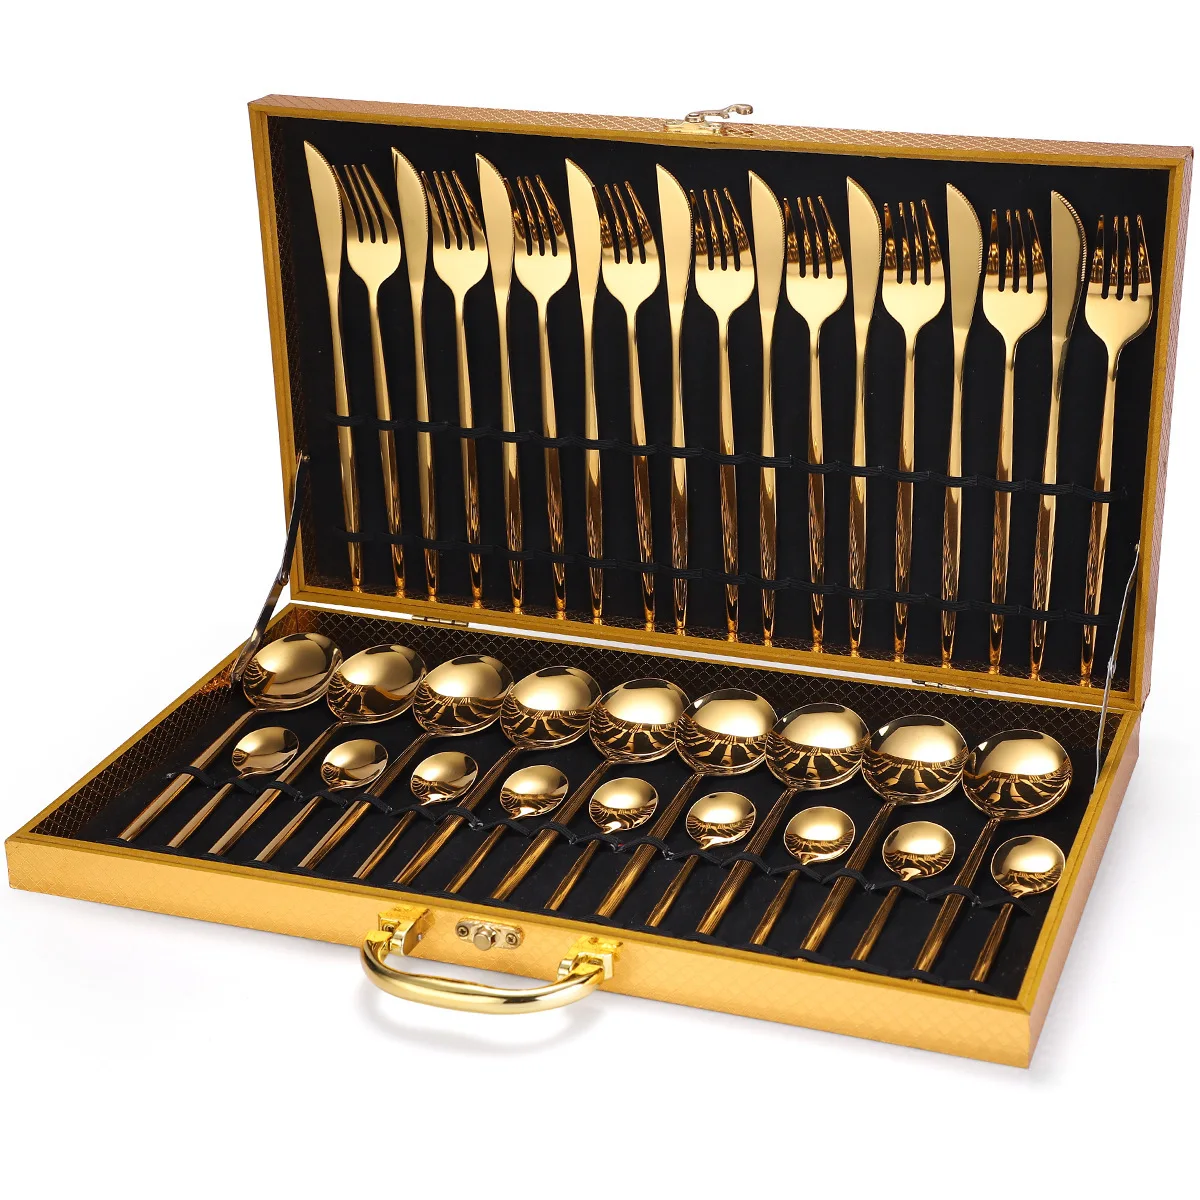 Cubiertos de lujo de acero inoxidable dorado, set de vajilla de tenedores, cuchillos y cucharas apto para lavavajillas, para regalo, 24 piezas